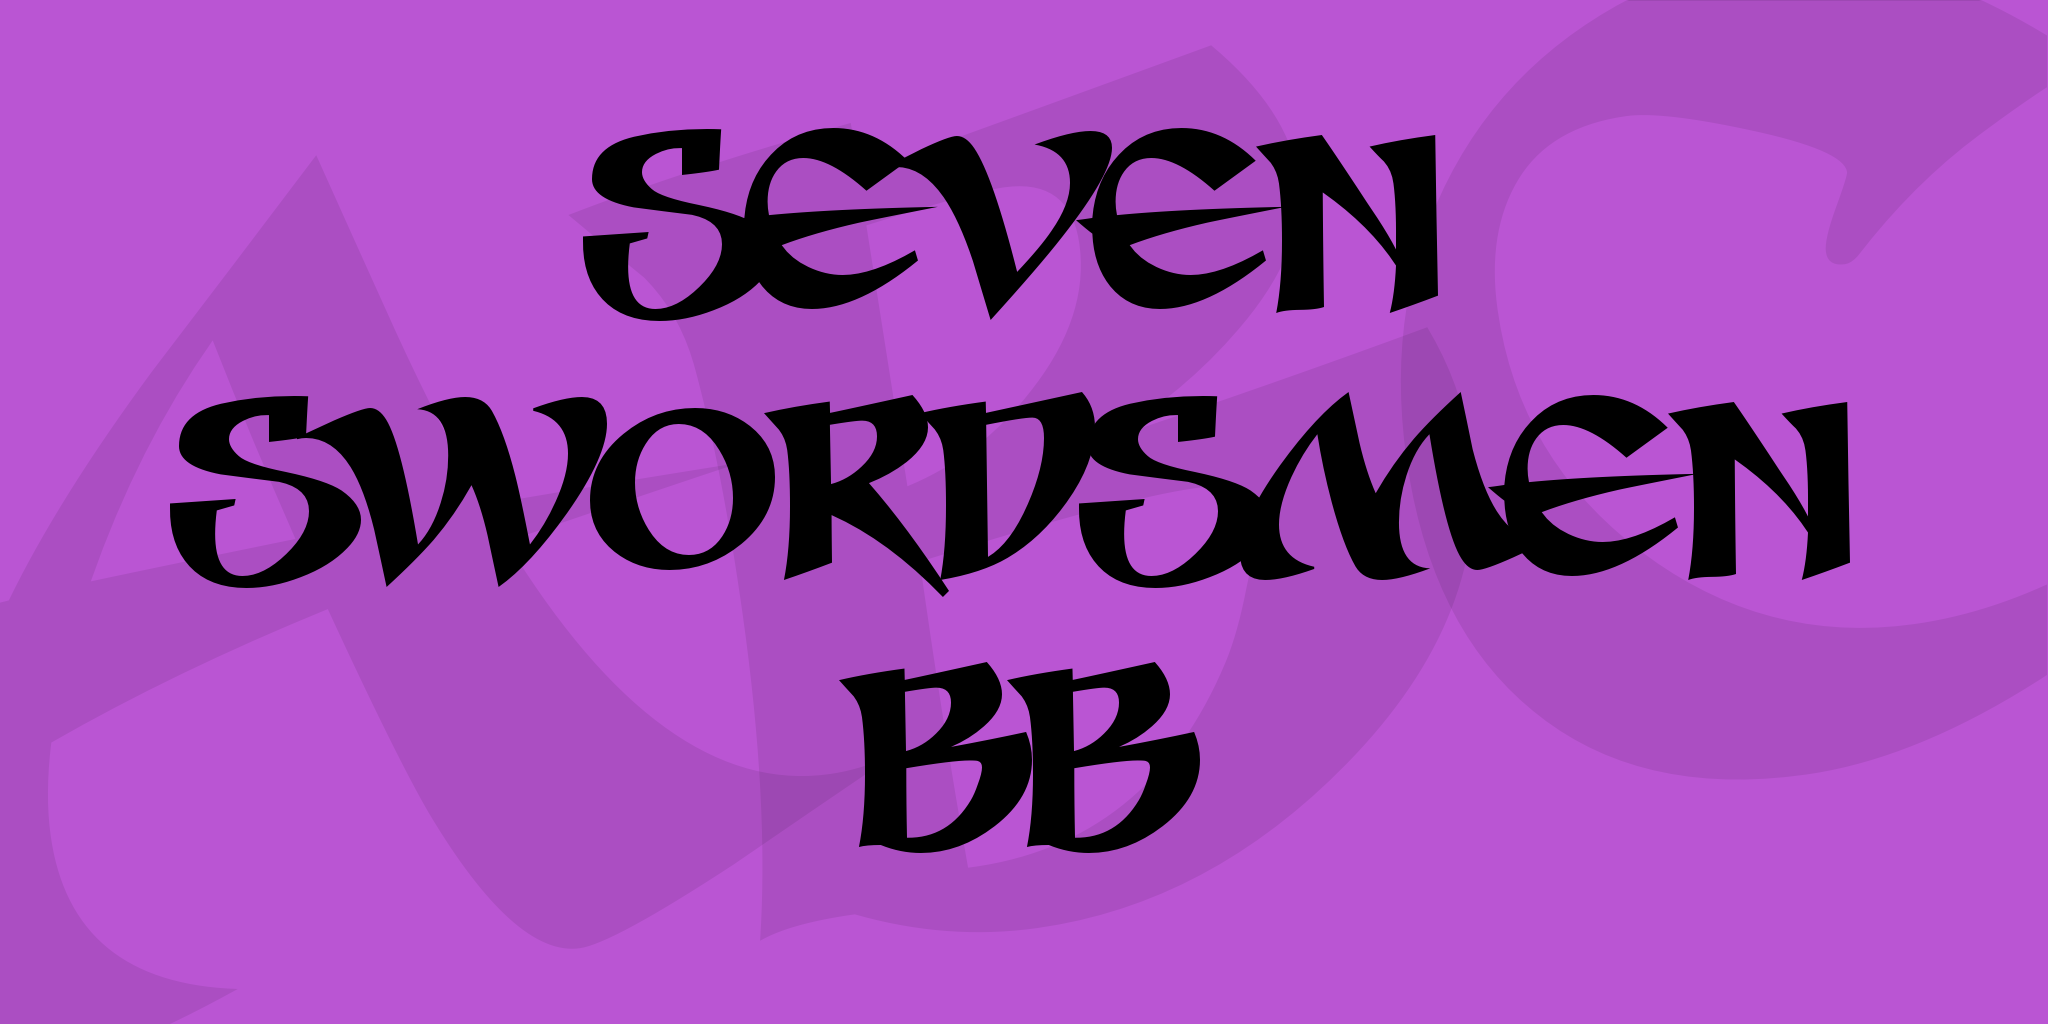 Seven Swordsmen Bb